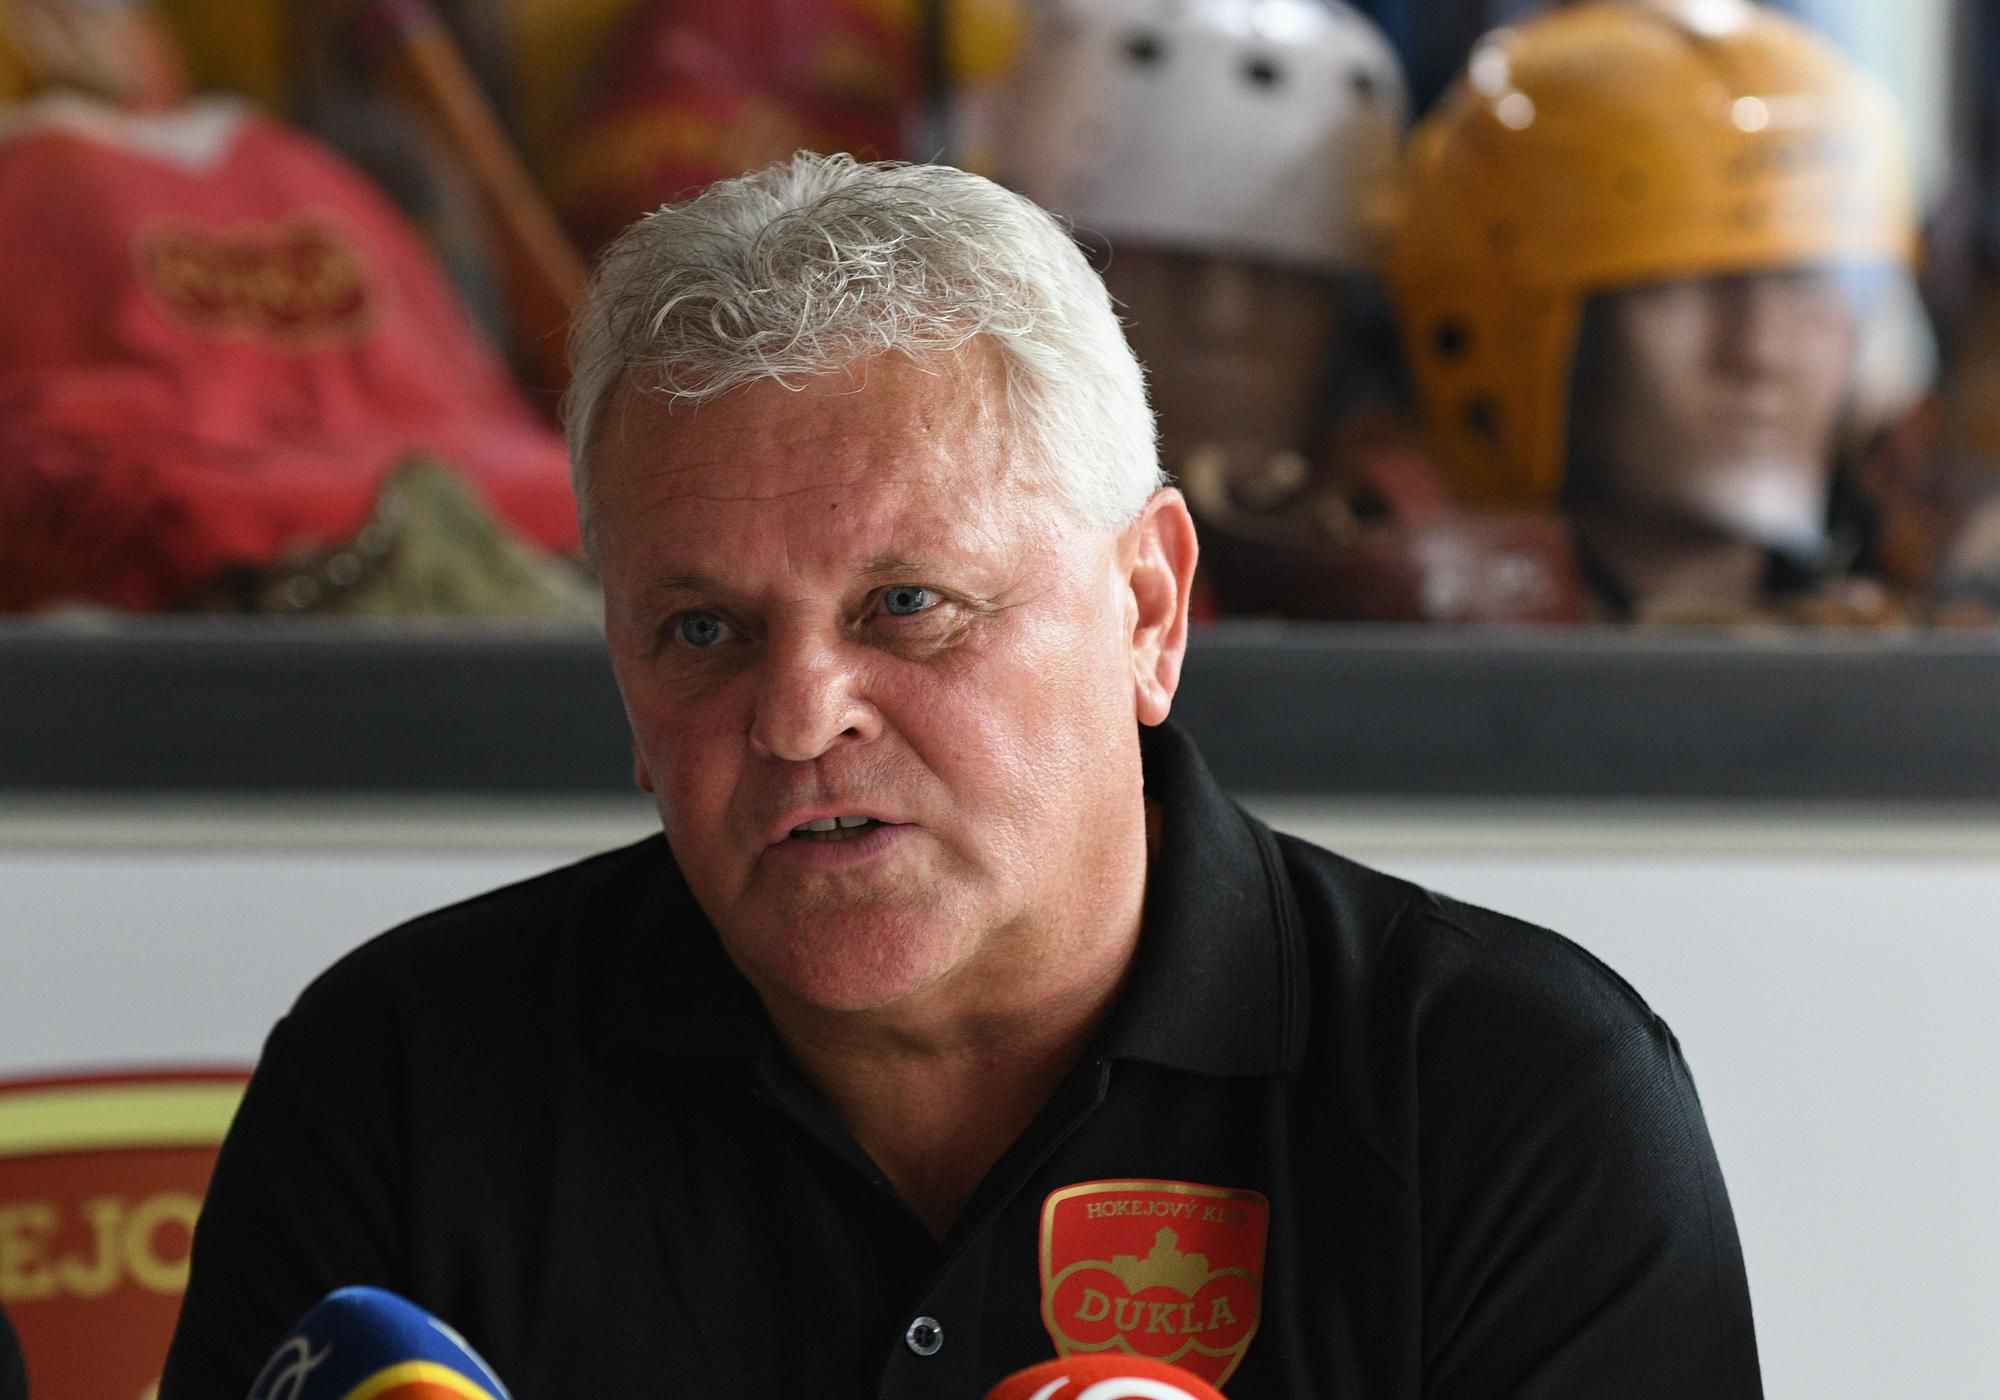 Predseda predstavenstva Viliam Ružička počas tlačovej konferencie hokejového klubu Dukla Trenčín.